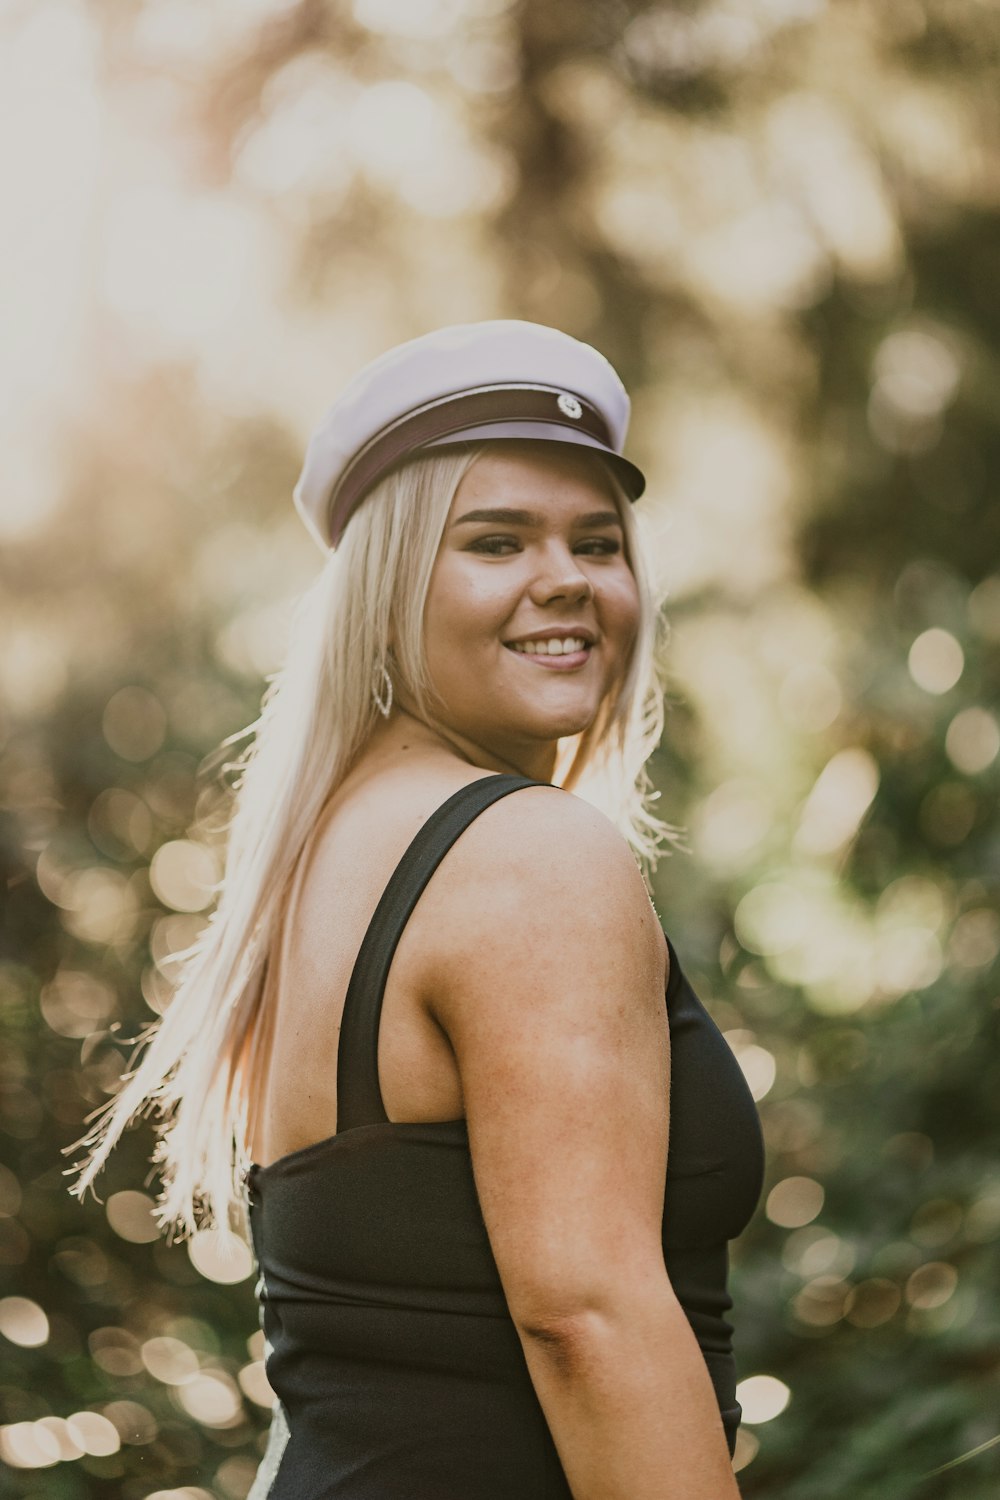 woman in black tank top wearing white cap smiling